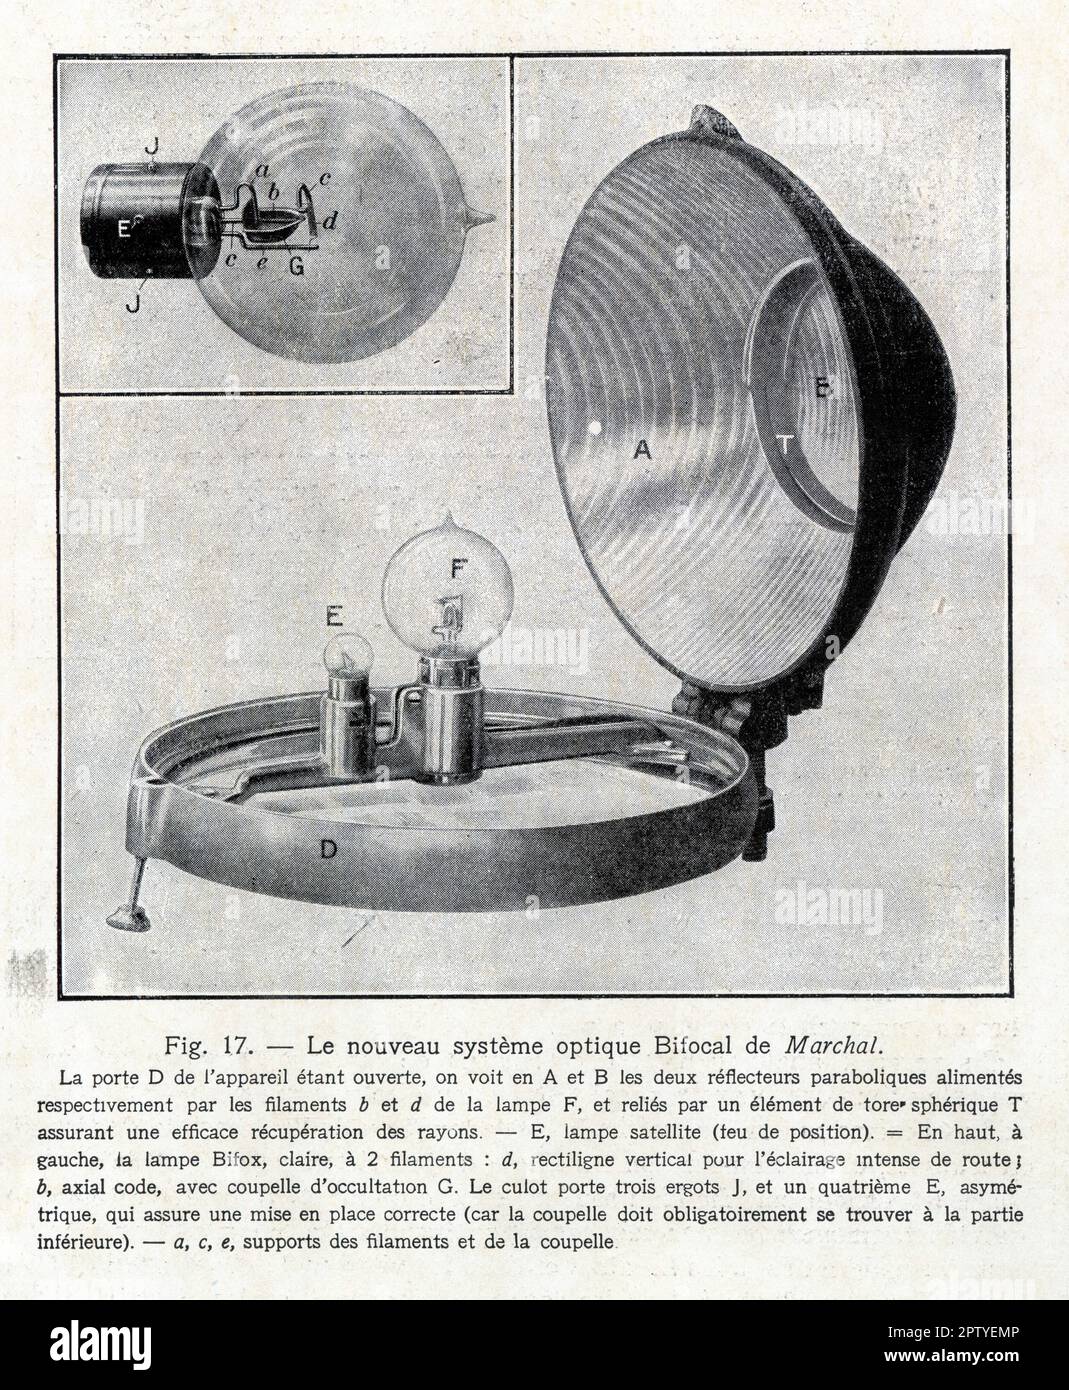 Le nouveau système optique Bifocal de Marchal. 1929 Stock Photo